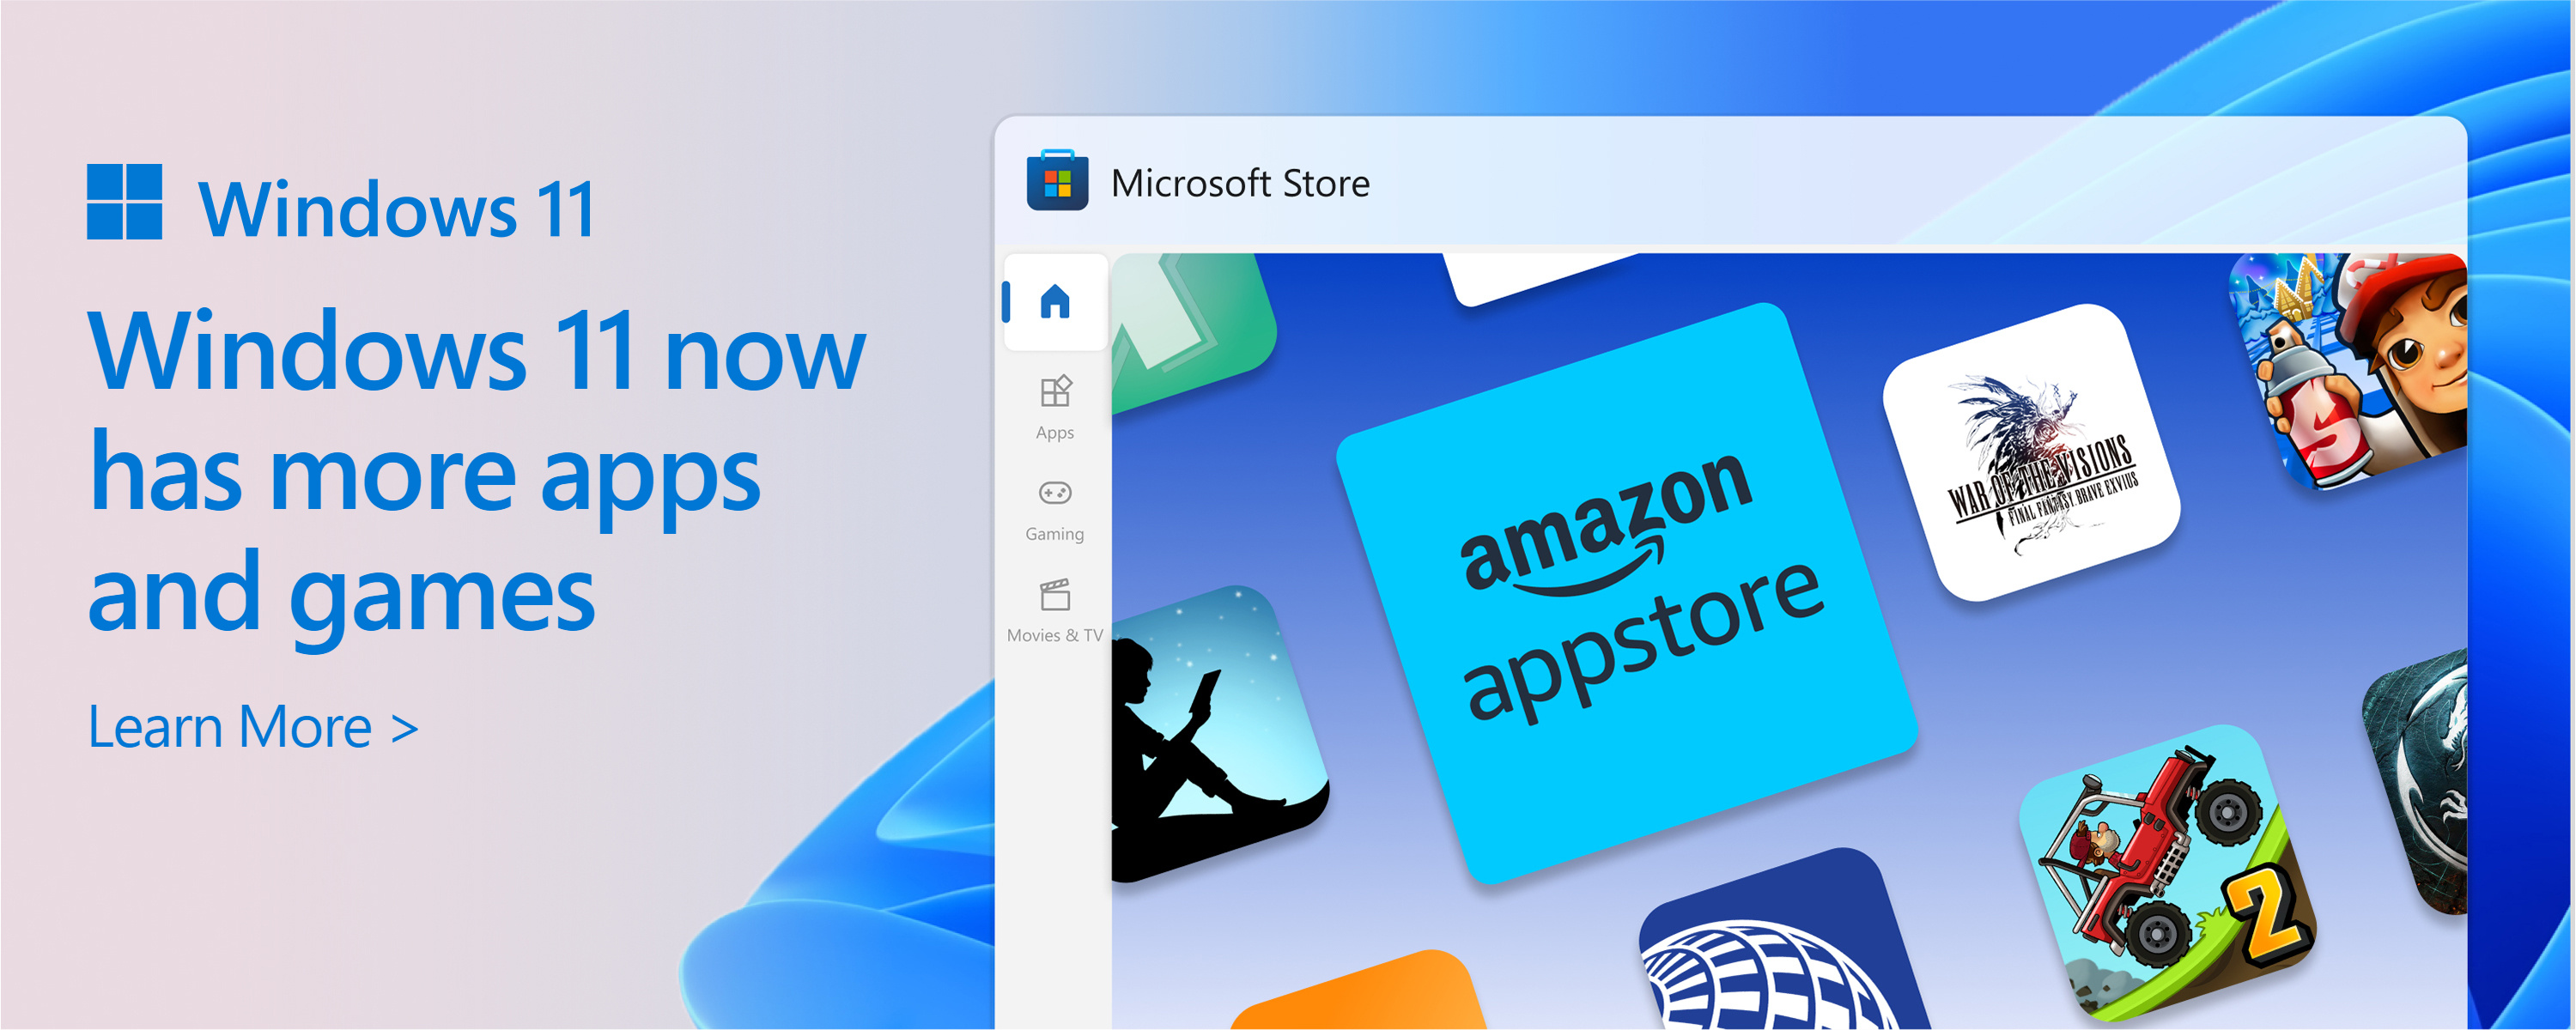 צילום מסך של Microsoft Store עם הטקסט: הקטלוג של Microsoft Store גדל. Windows 11 מספק לך יותר מהאפליקציות והמשחקים שאתה צריך.